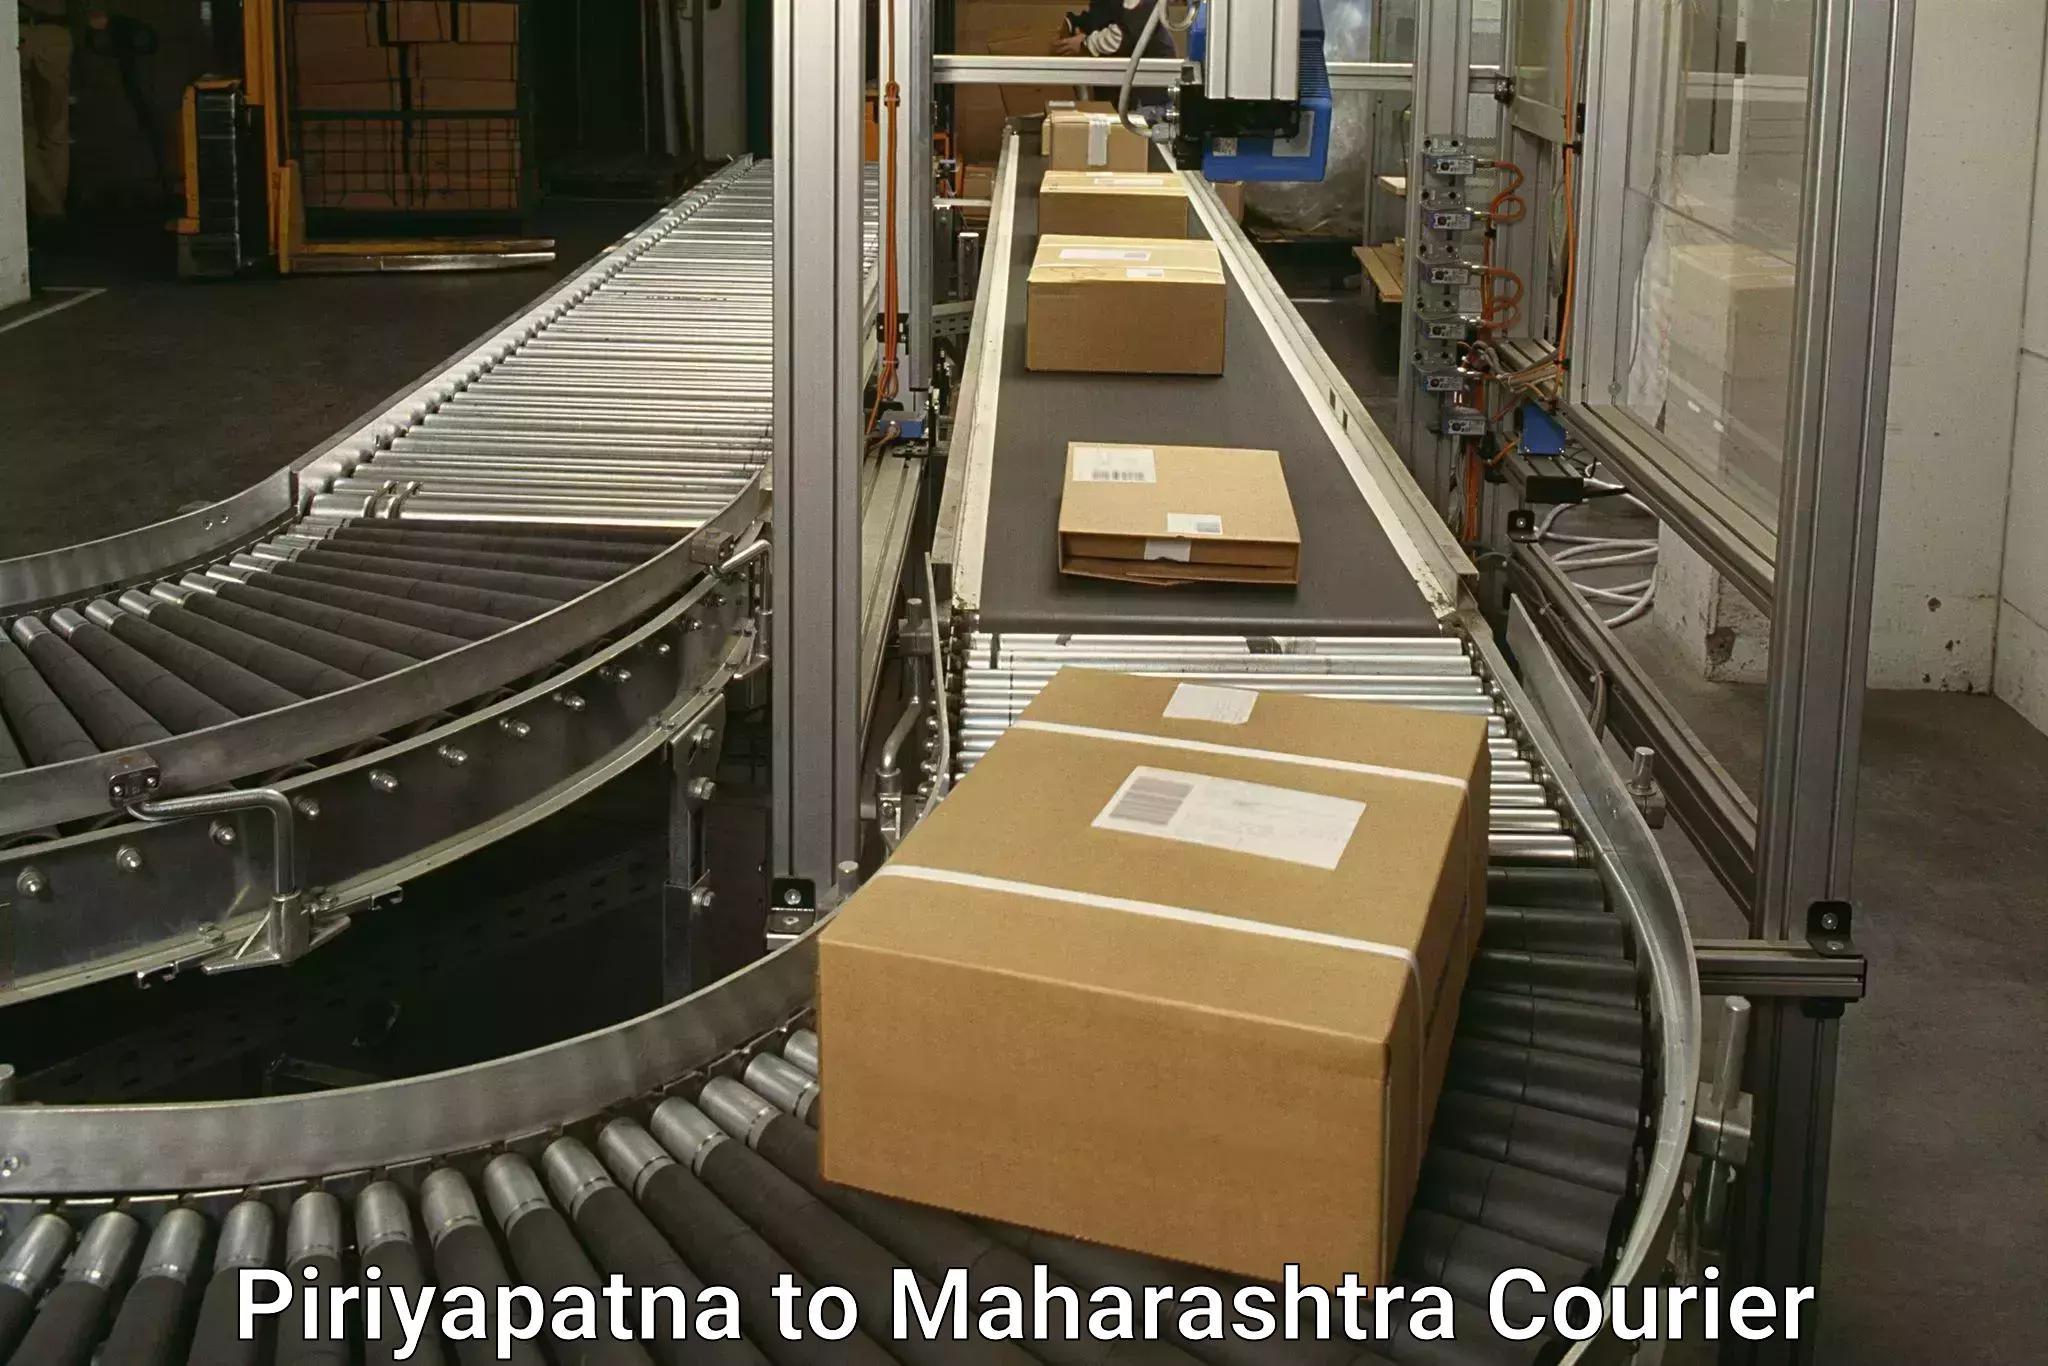 Urgent courier needs Piriyapatna to Vita